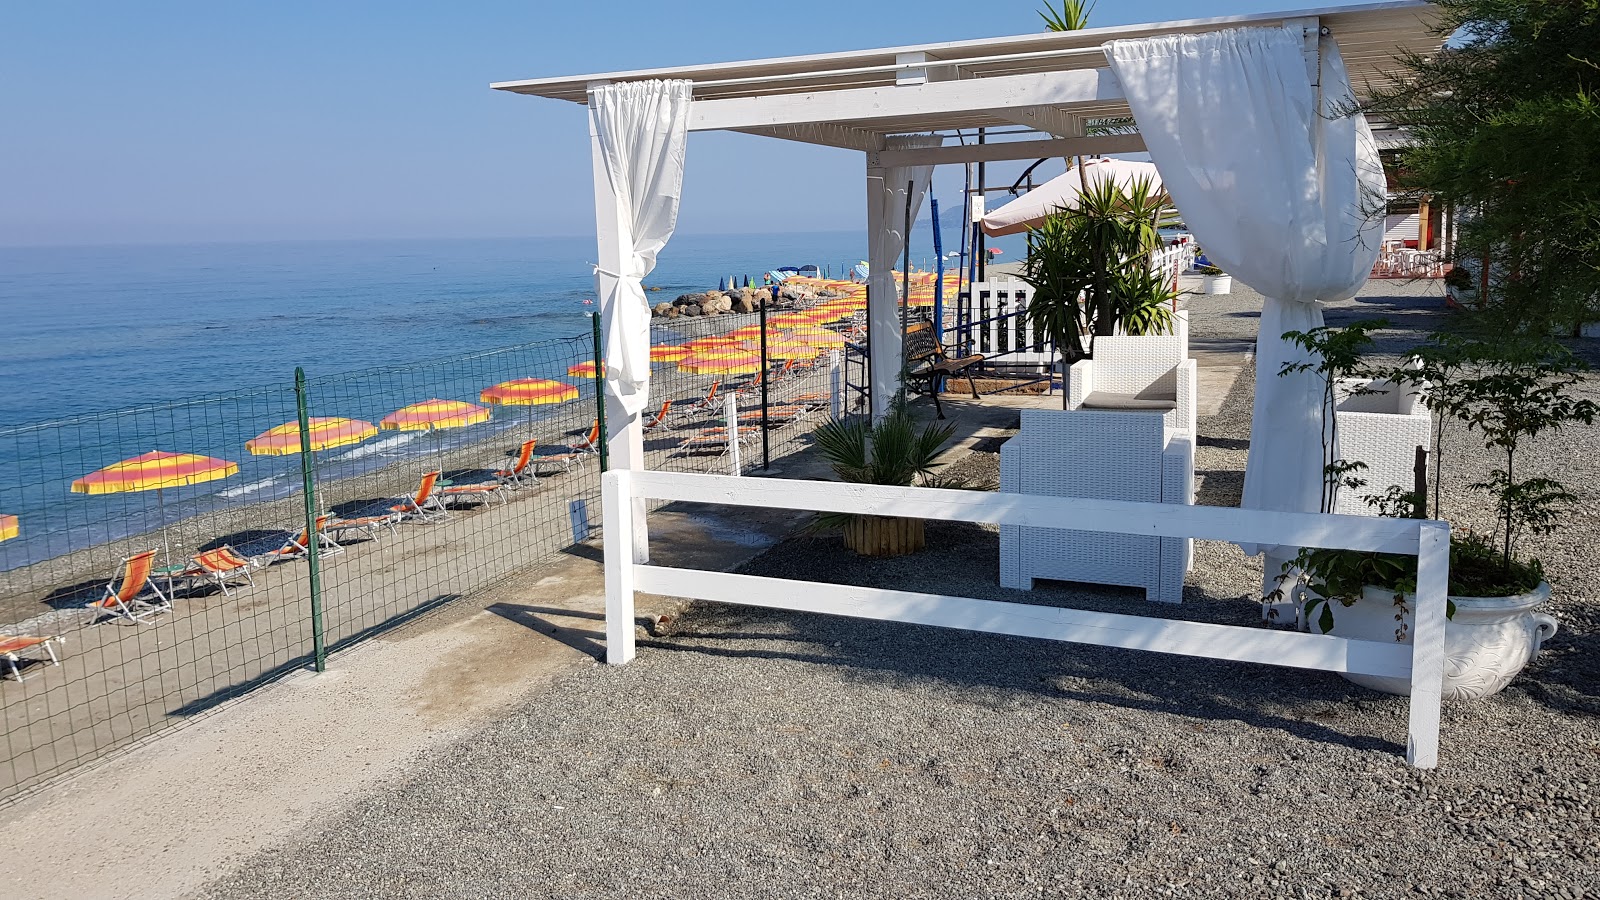 Photo de Marina di Fuscaldo beach - endroit populaire parmi les connaisseurs de la détente